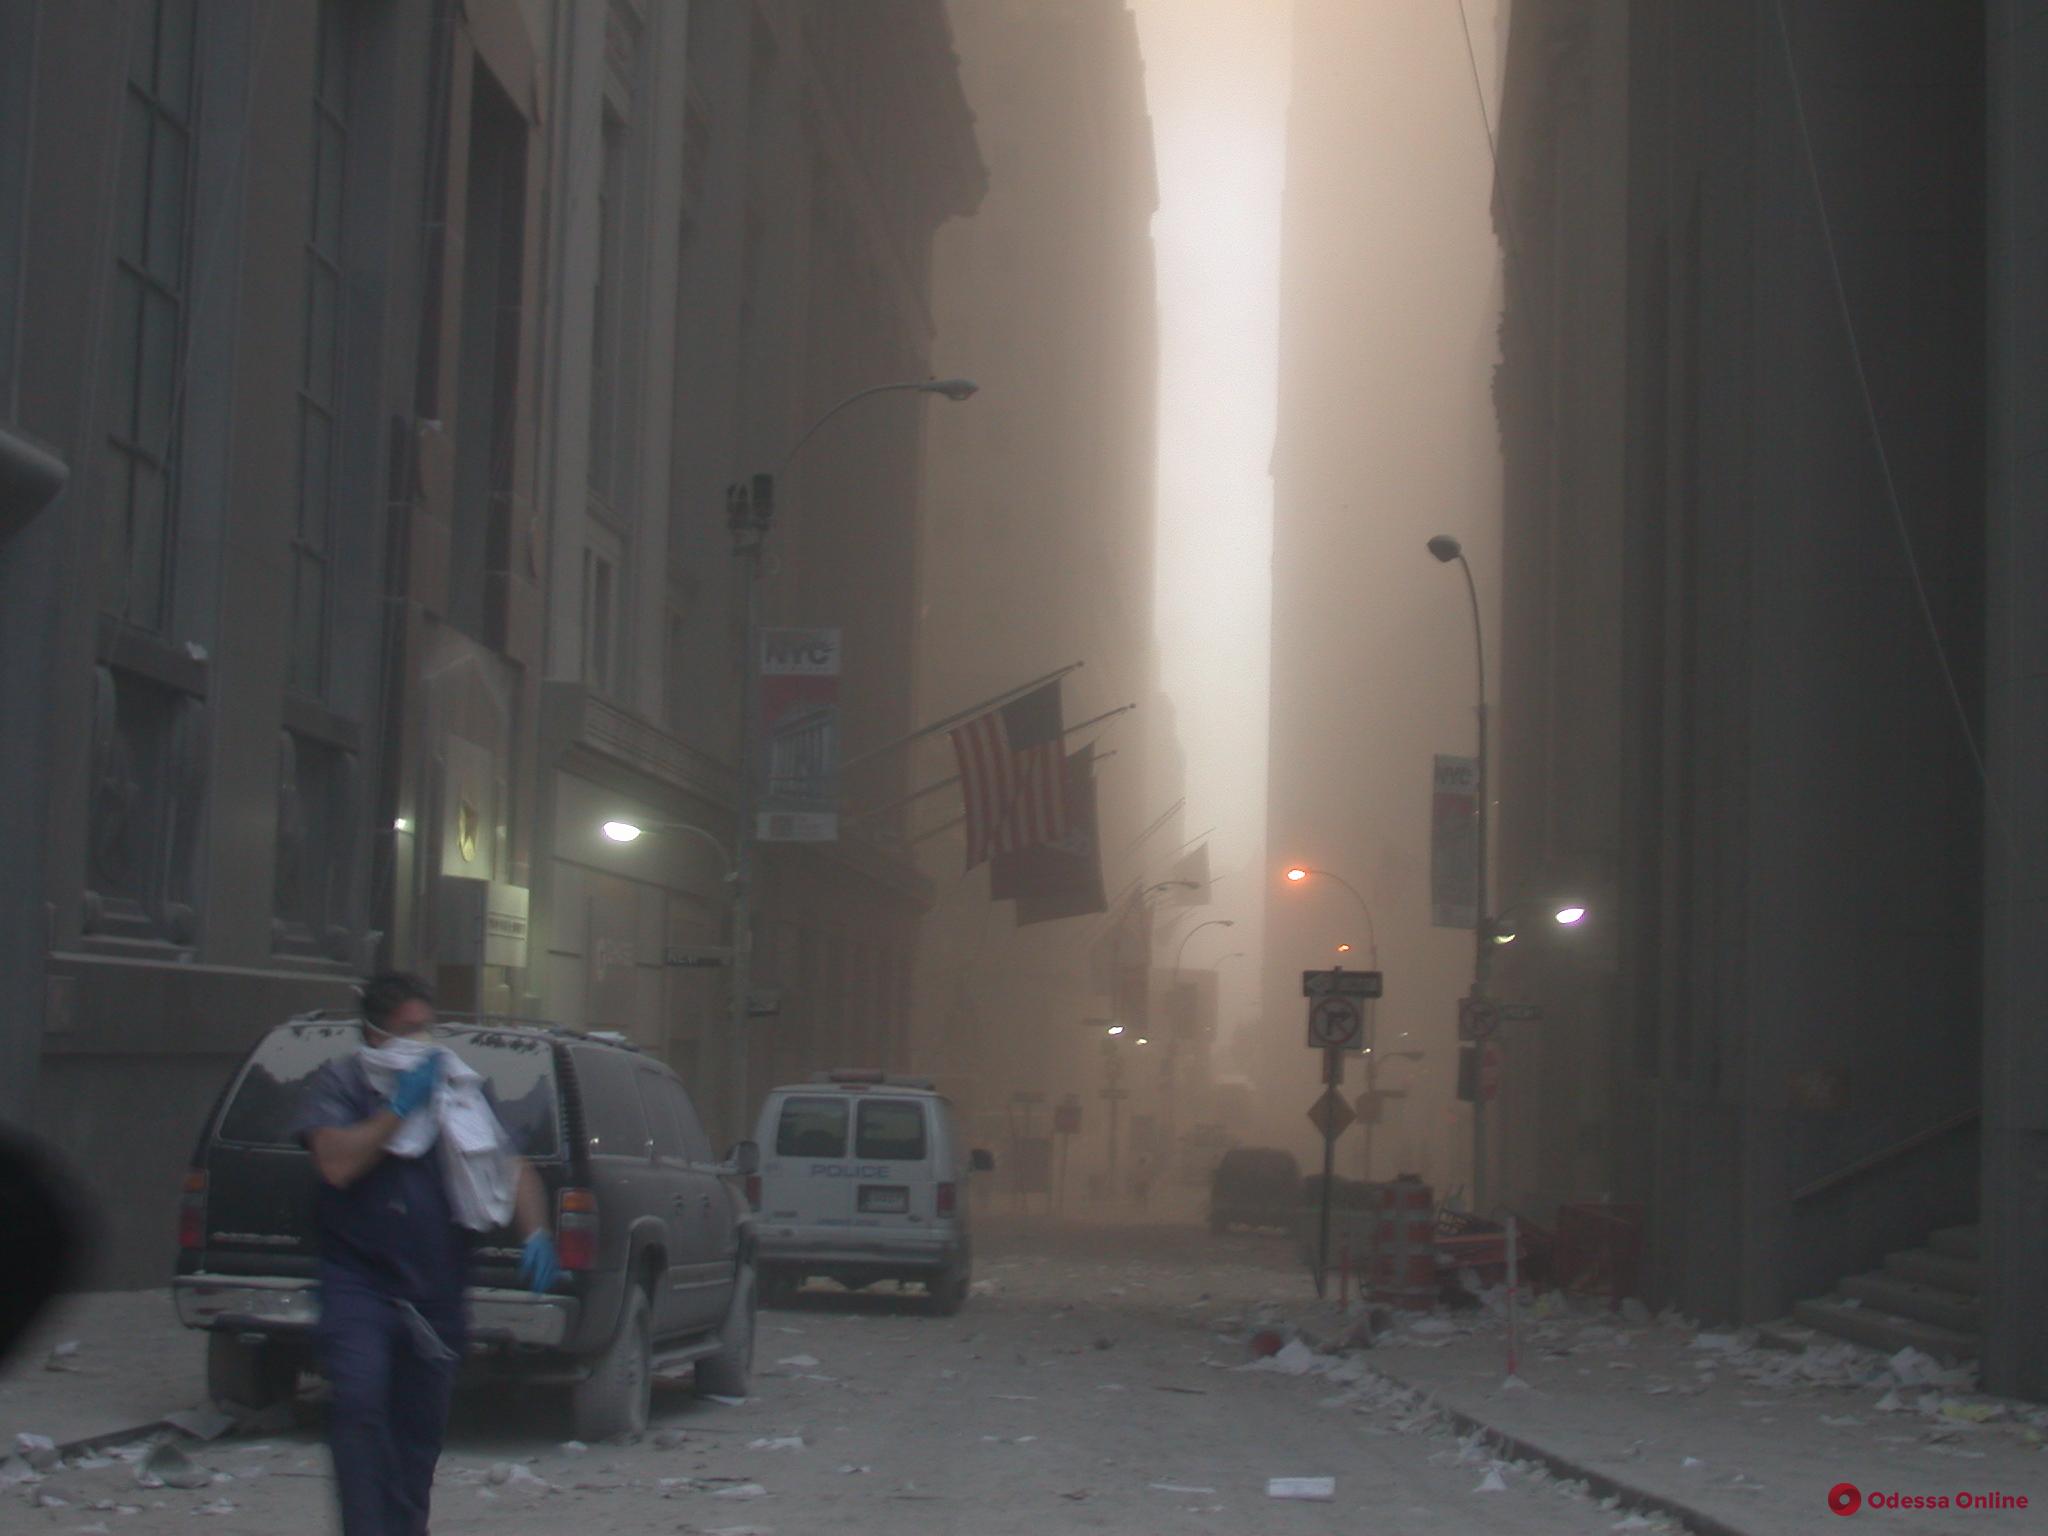 Теракт 11 сентября: cекретная служба США показала ранее не опубликованные снимки